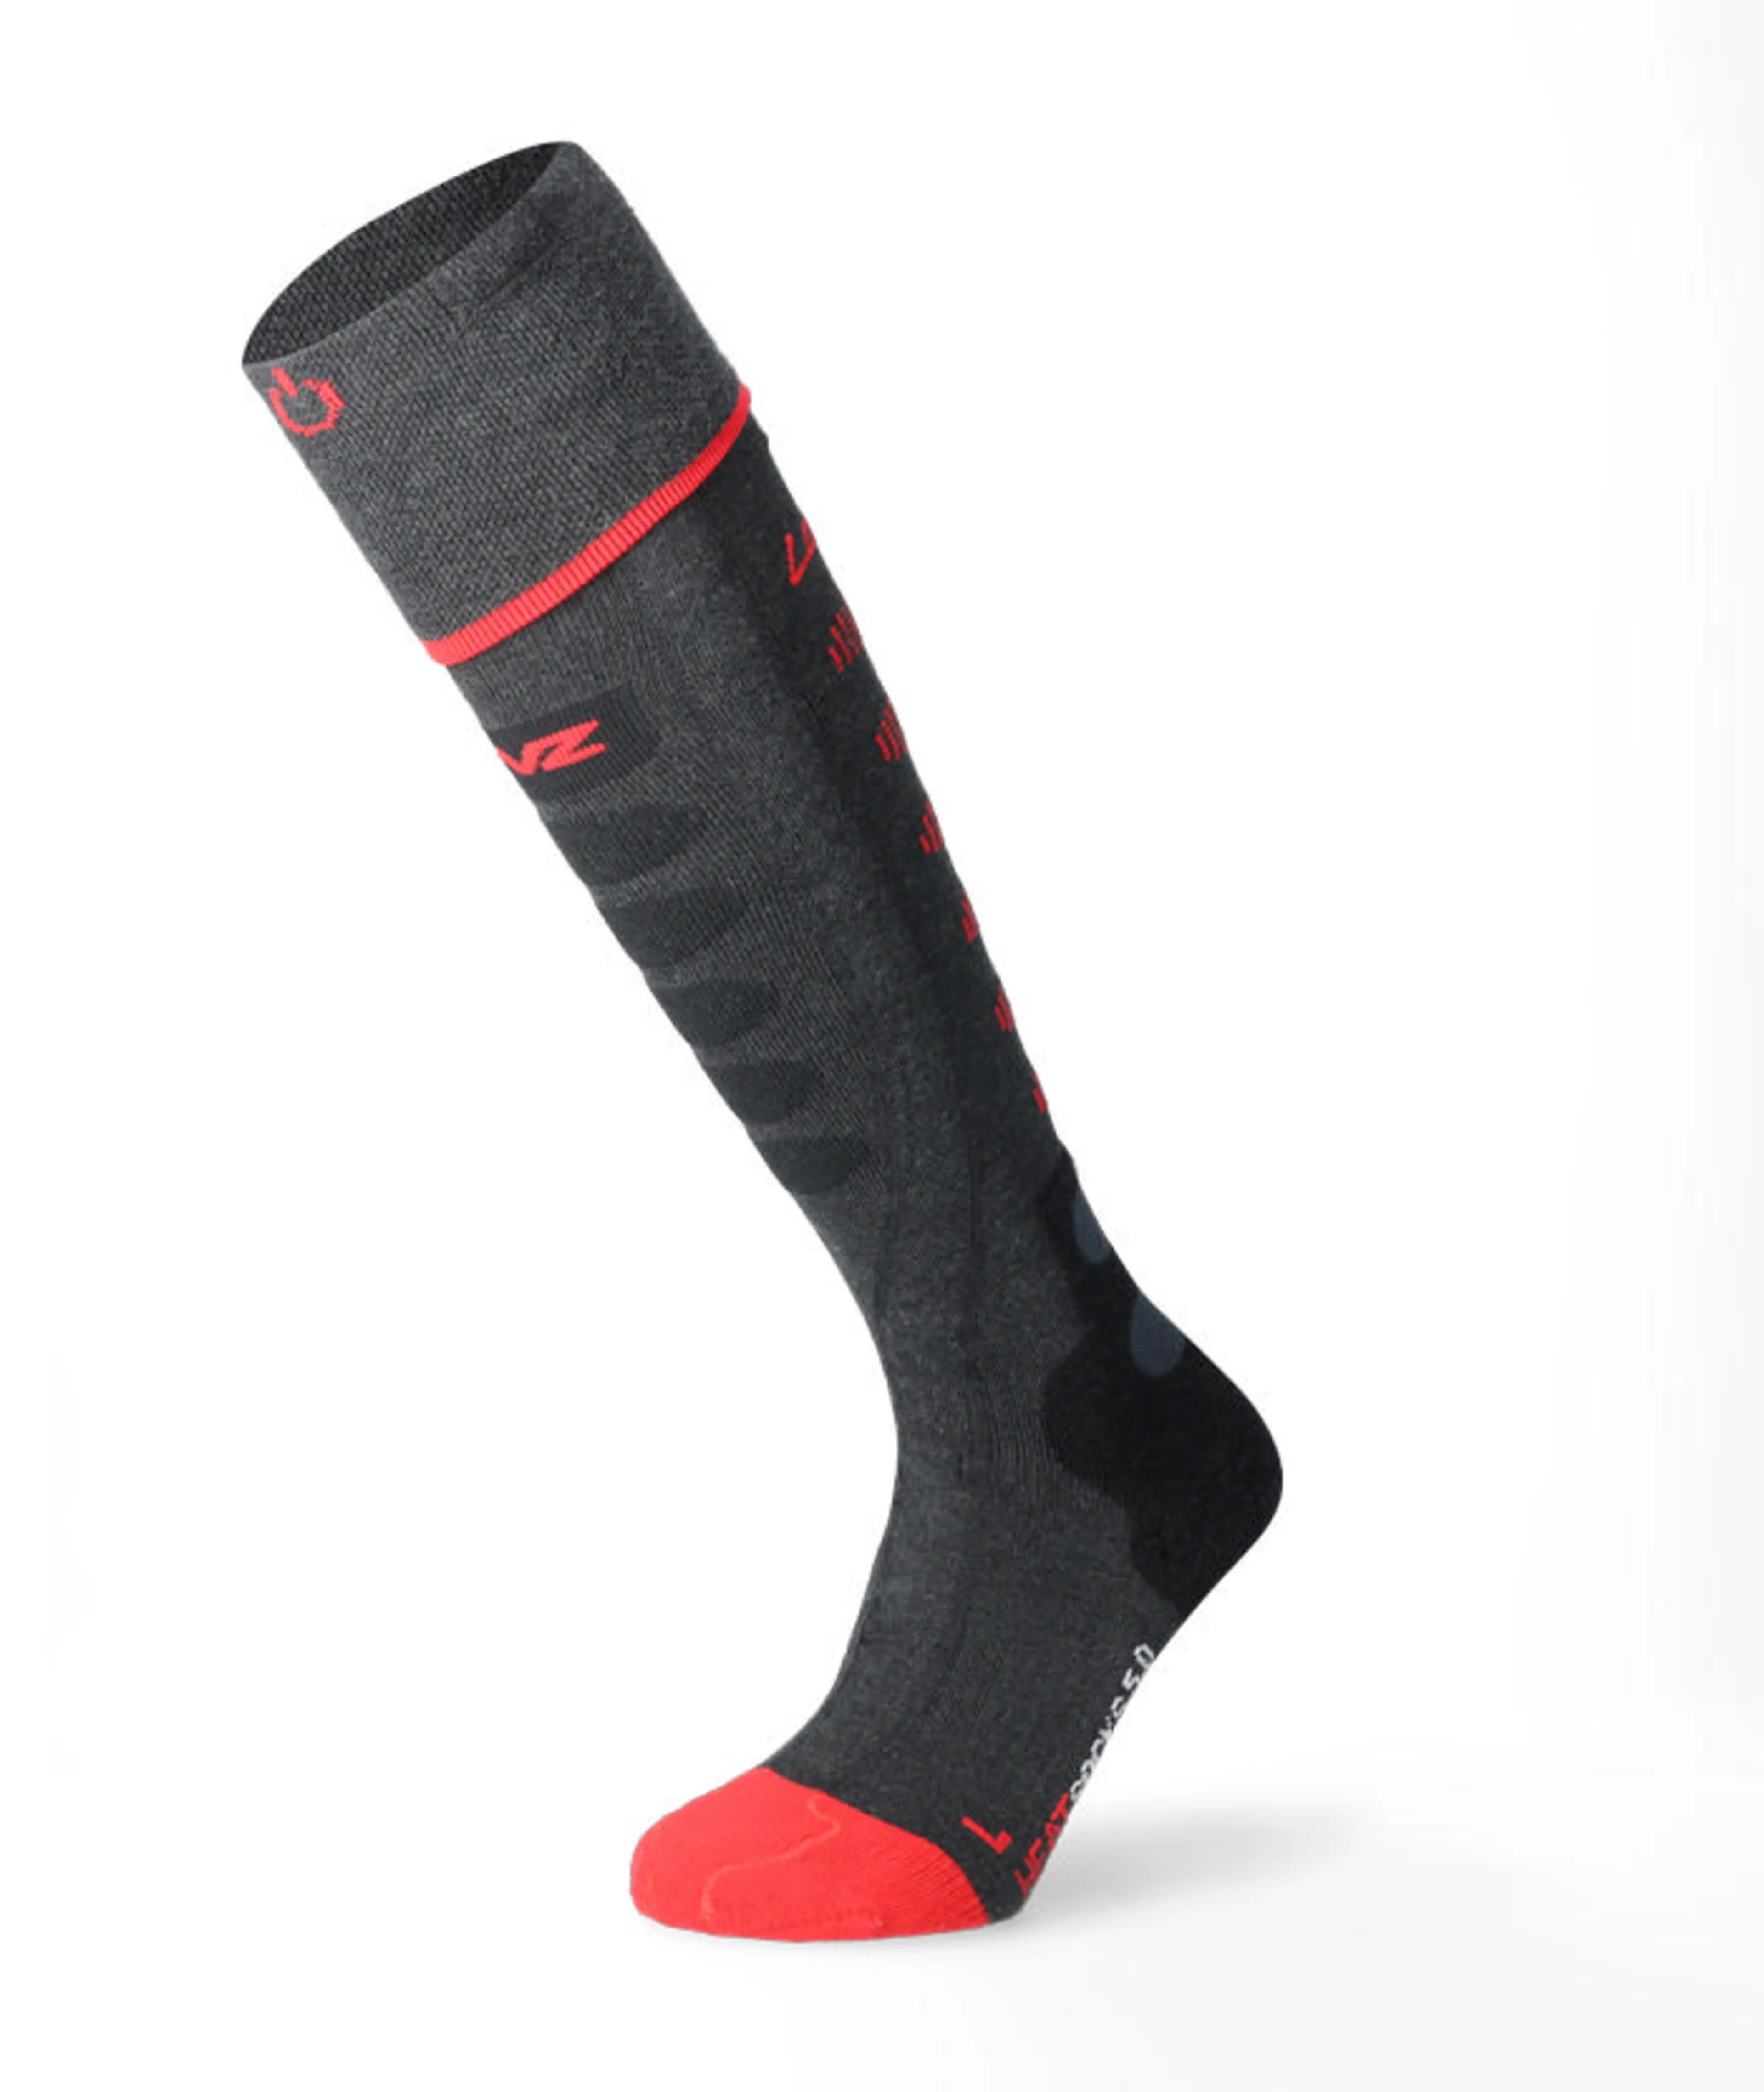 Heat sock 5.1 TC